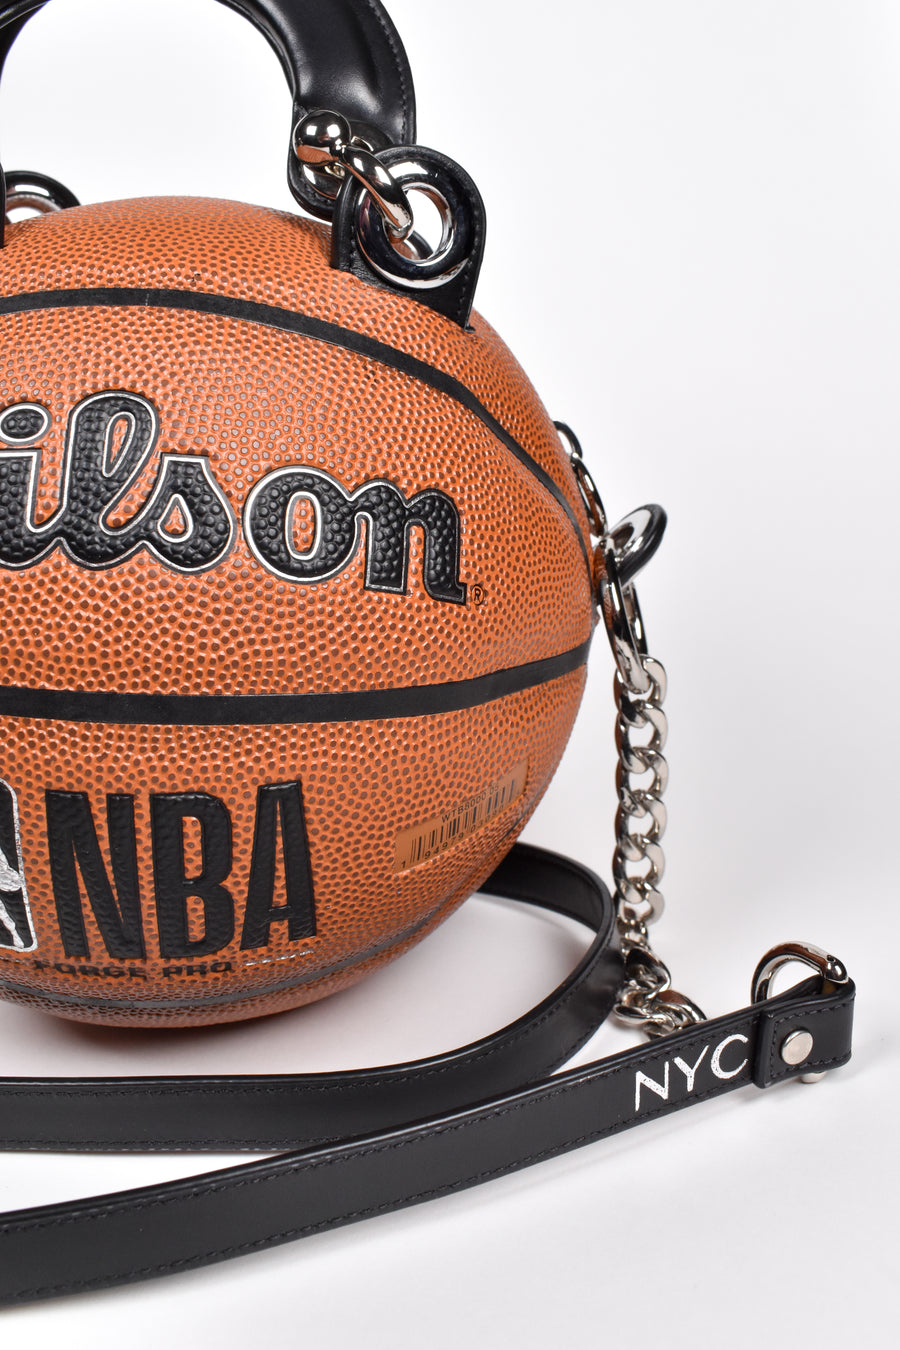 NBA Basketball Bag • Andrea Bergart